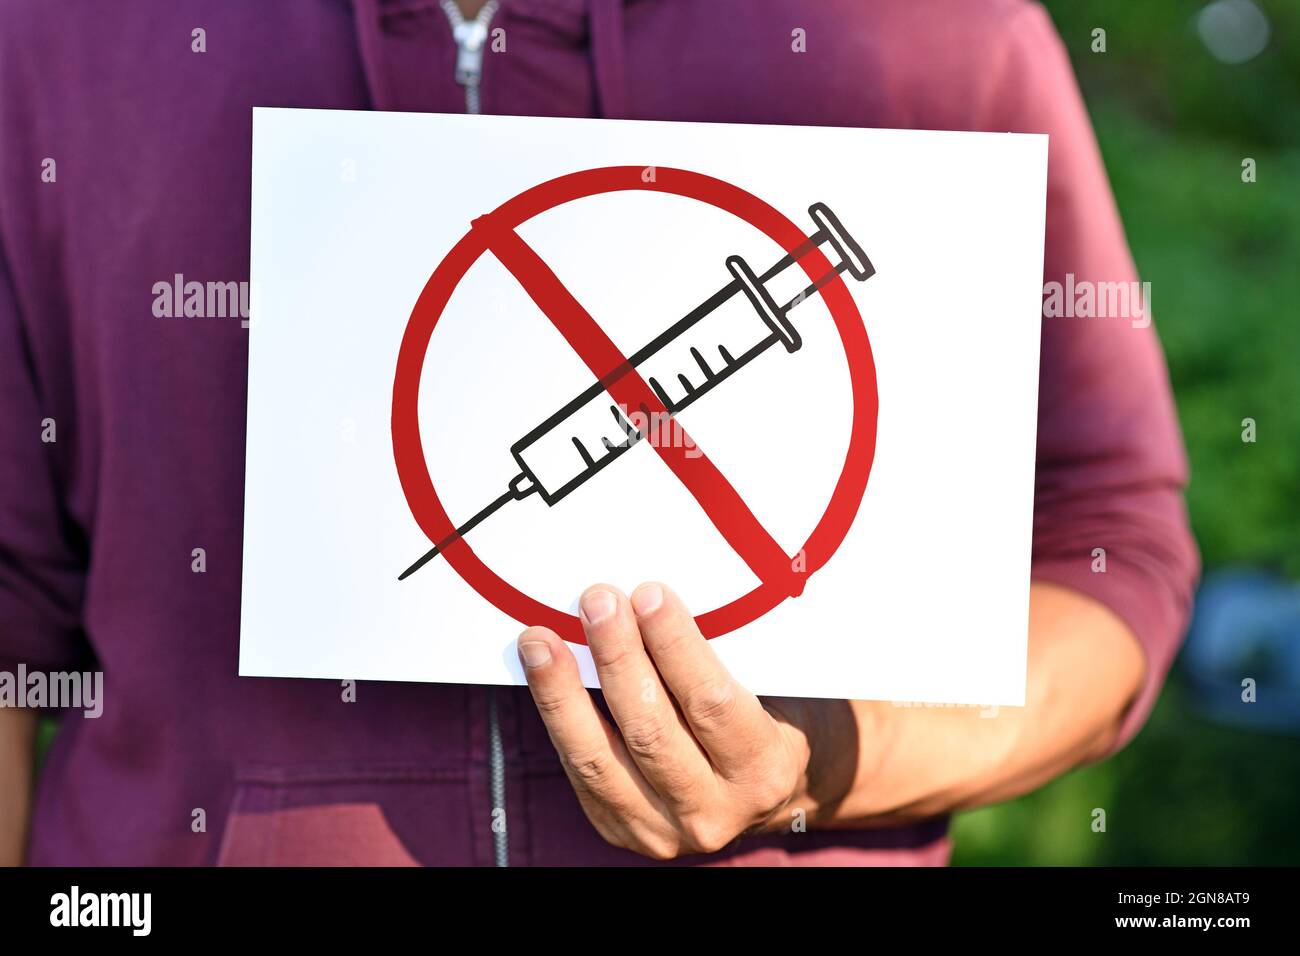 Signe de démonstration anti-vaccin avec un dessin de seringue en cercle rouge barré Banque D'Images